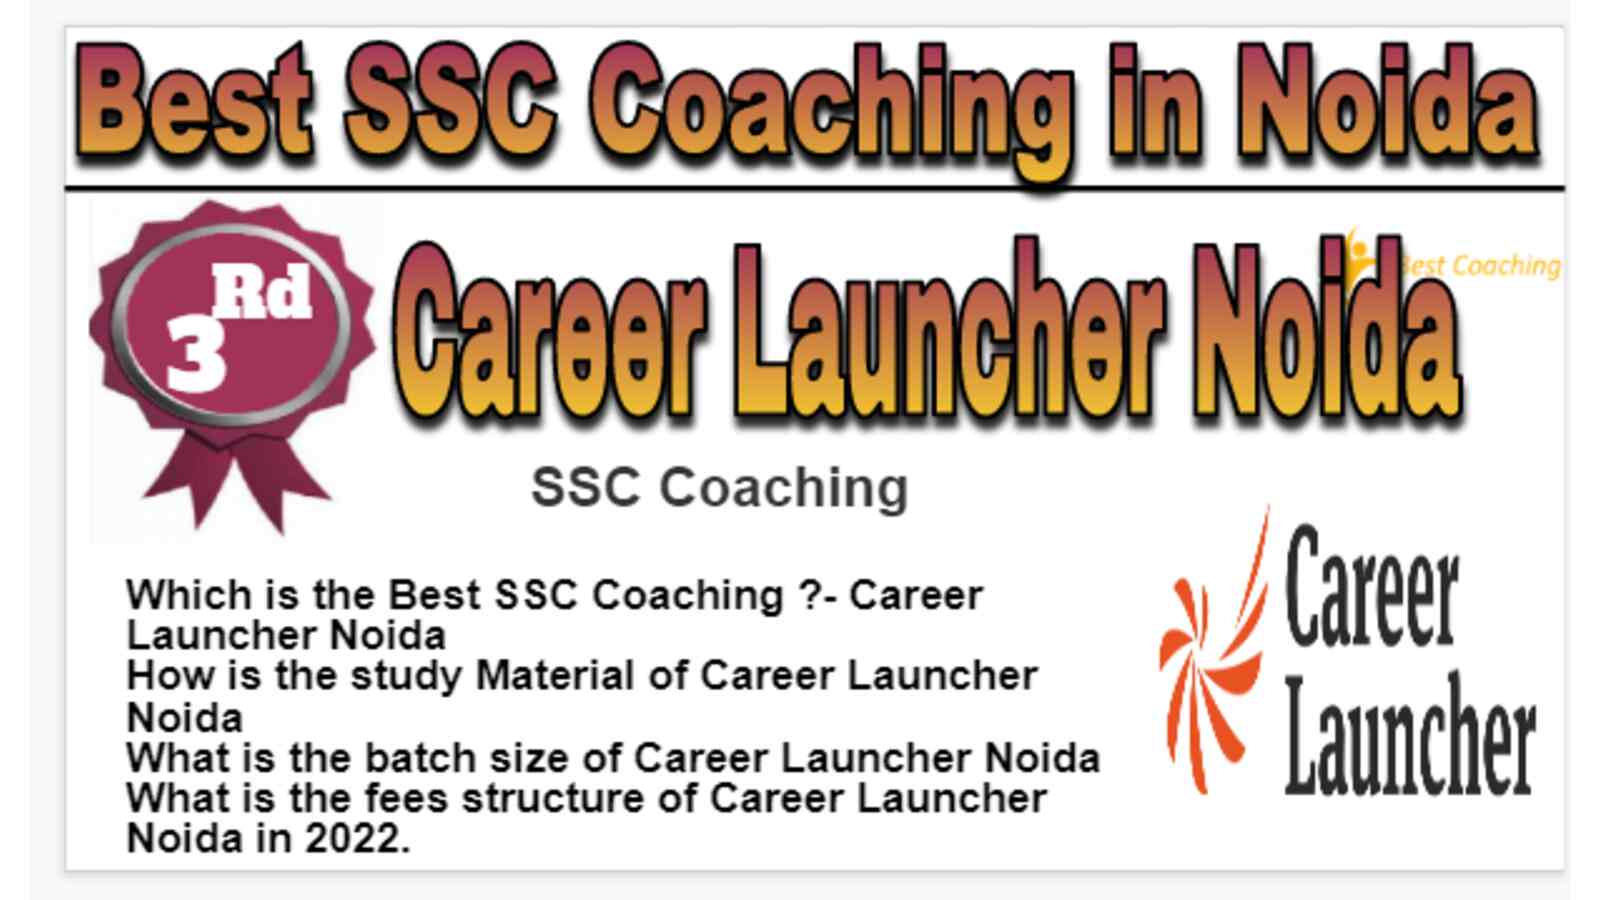 Rank 3 Best SSC Coaching in Noida